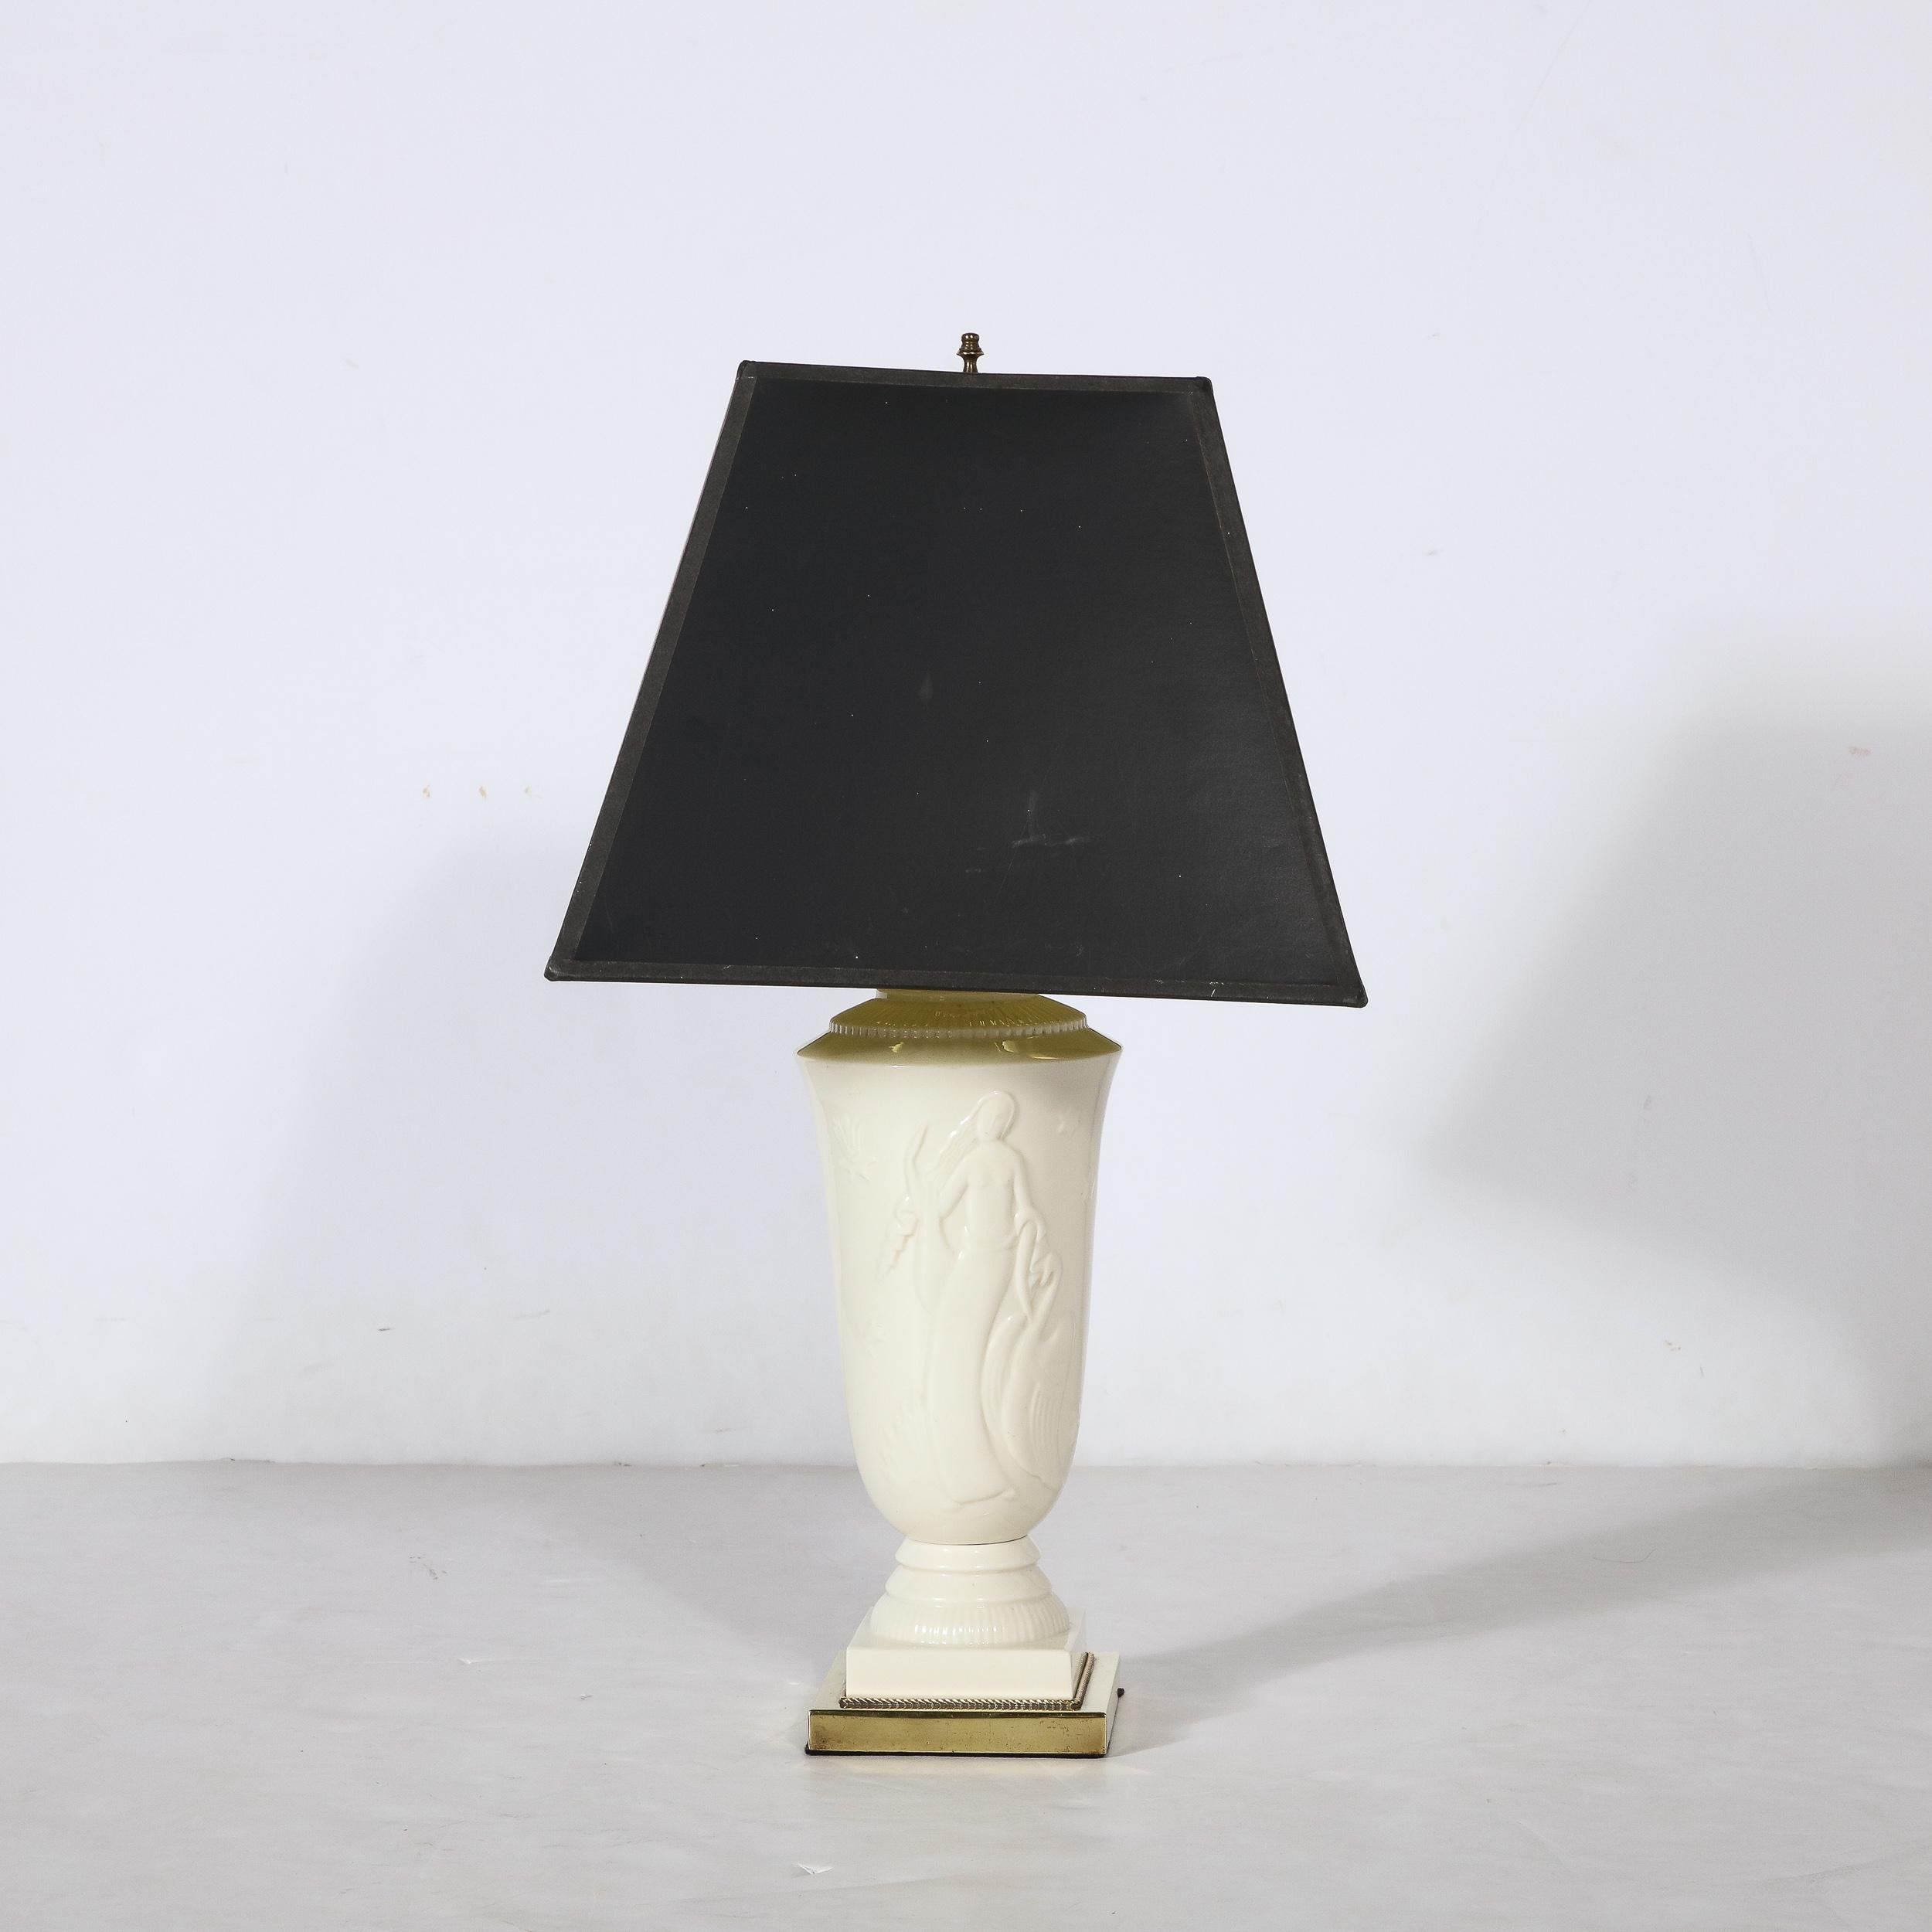 Diese schöne Art Deco Porzellan Tischlampe von Leda und dem Schwan von De Vegh für Lenox stammt aus den Vereinigten Staaten, CIRCA 1930. Mit einem rechteckigen Sockel aus poliertem Messing, aus dem sich der urnenförmige Lampenkörper erhebt. Das